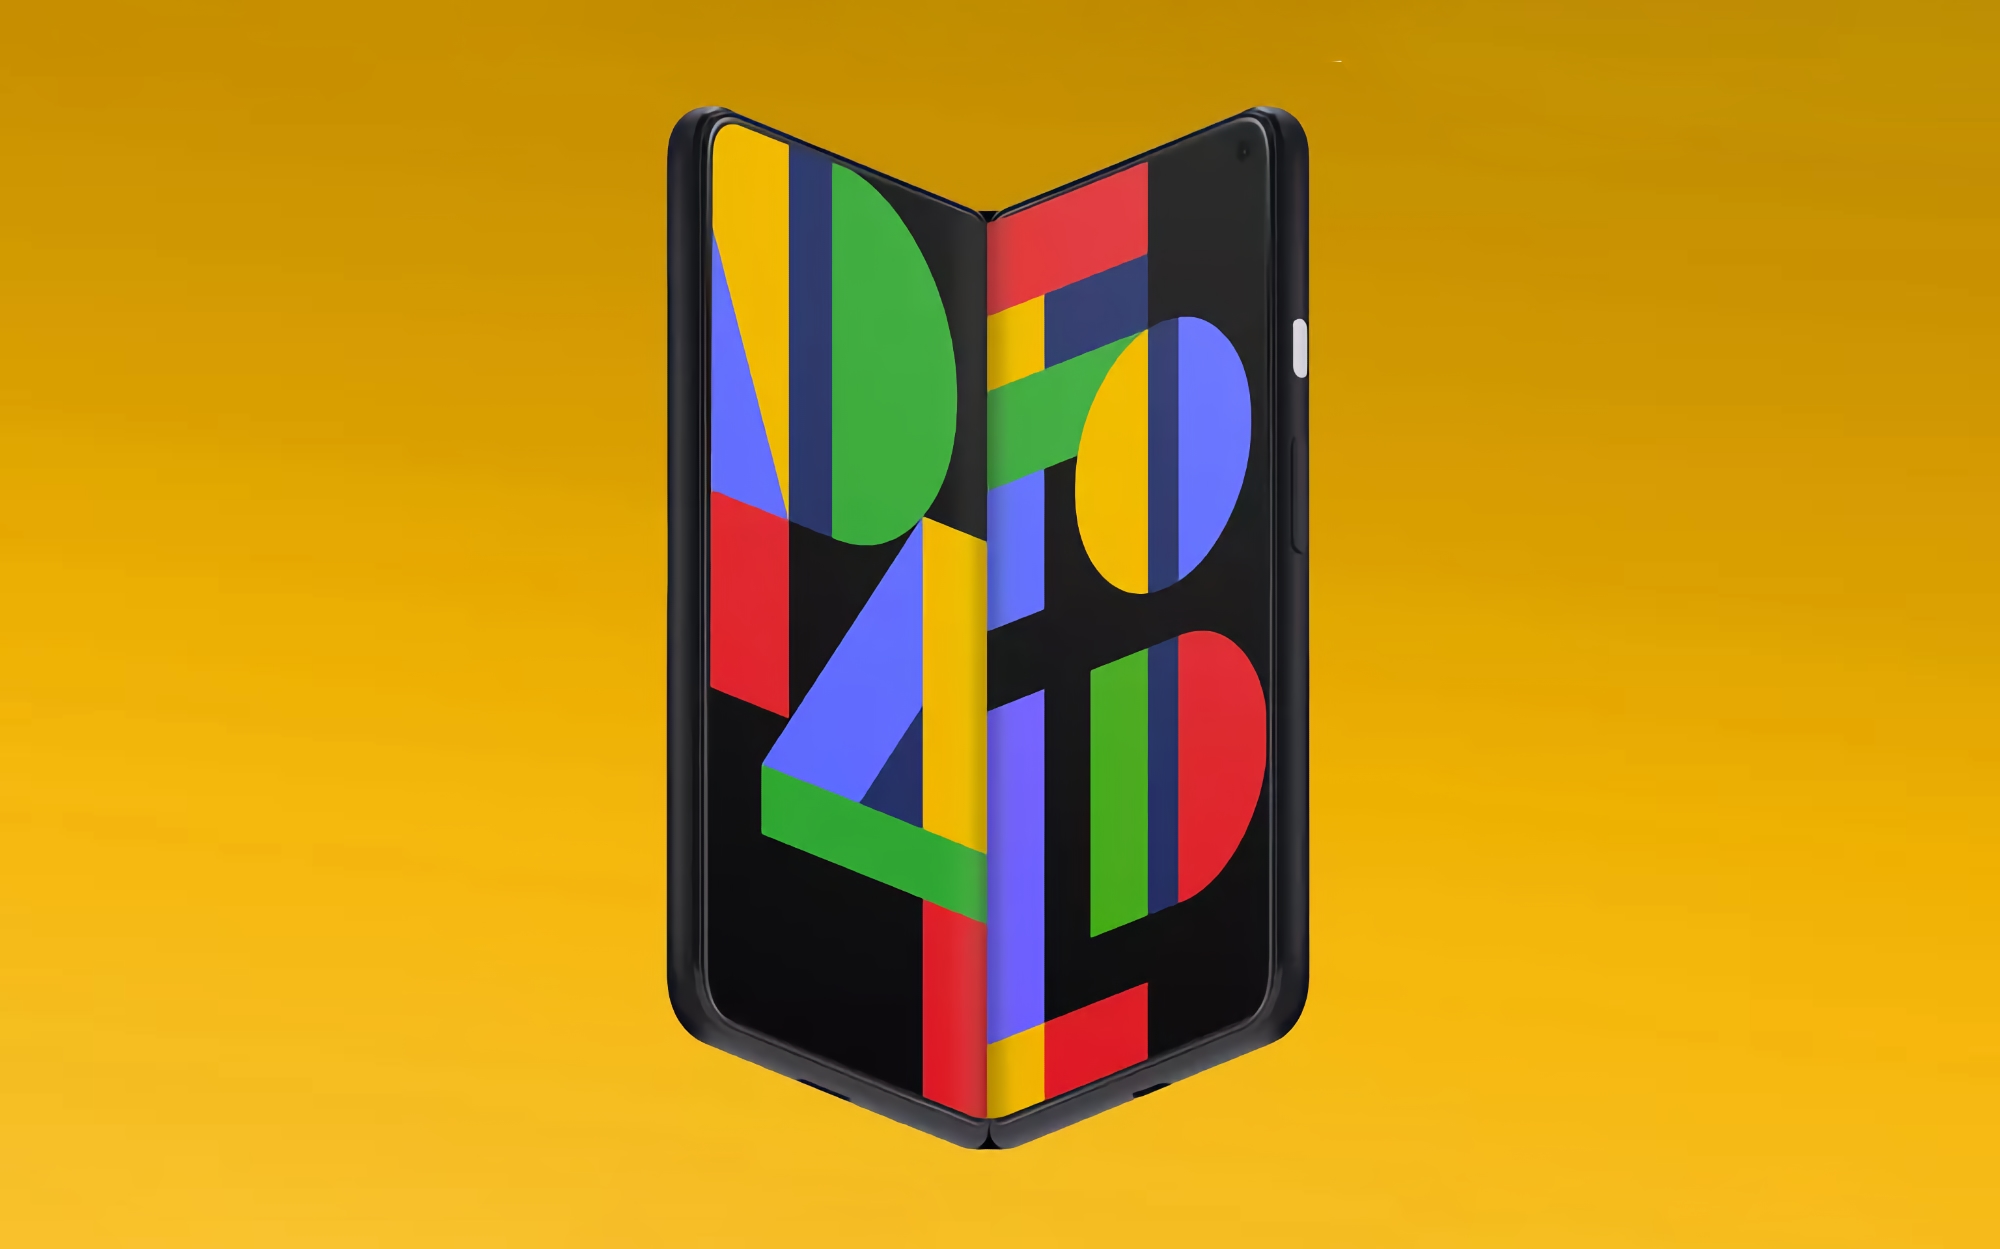 Plotka: Google nazwie swojego składanego smartfona Pixel Notepad i będzie kosztował mniej niż Galaxy Z Fold 3